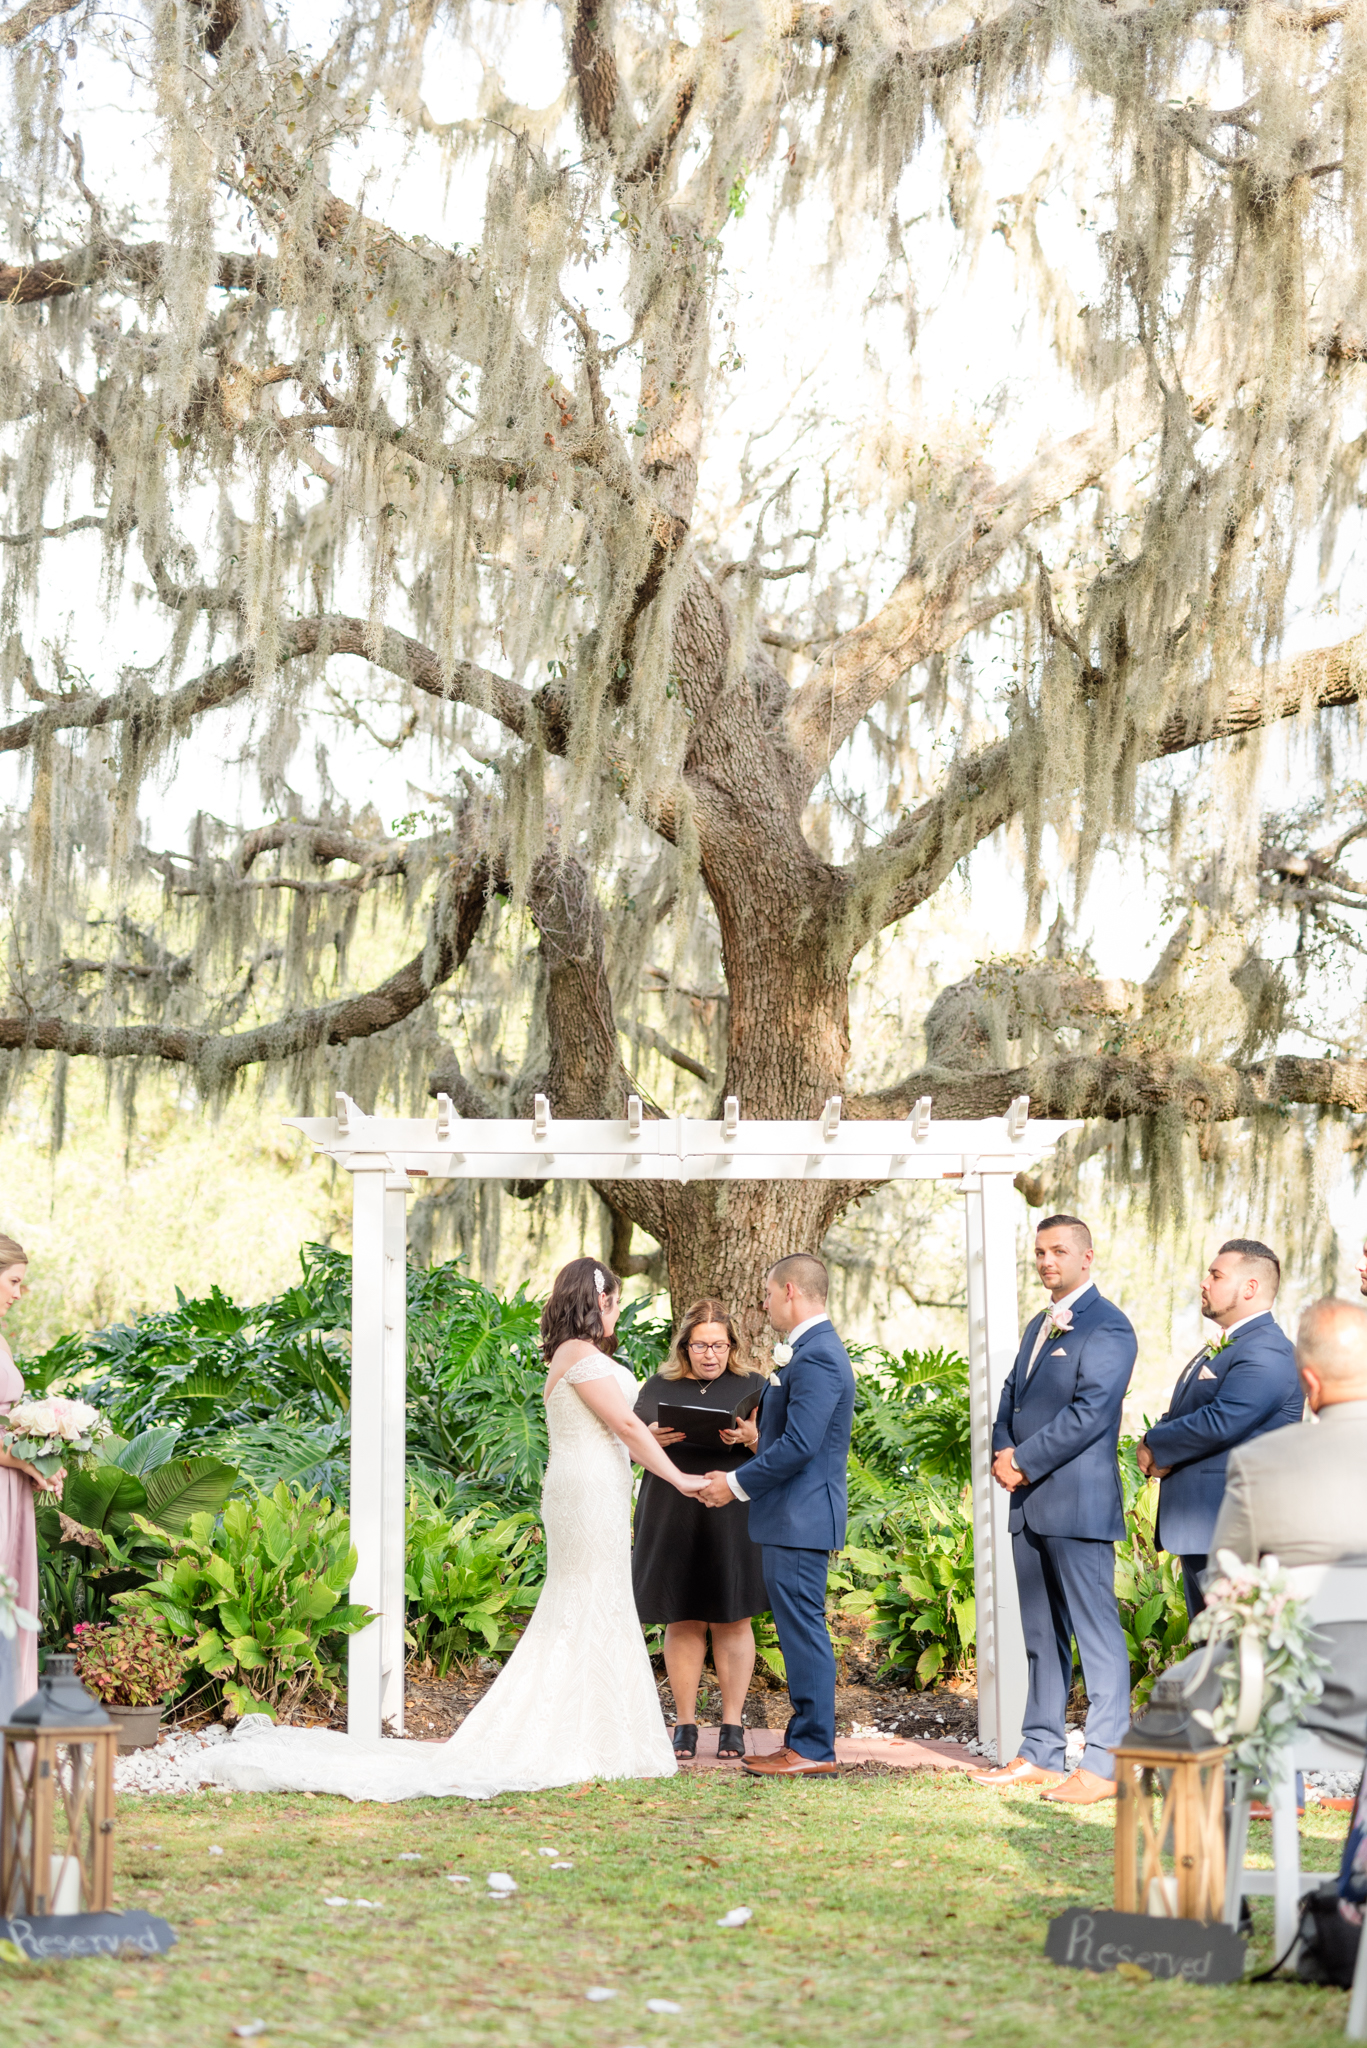 Wedding ceremony under large oak tree.